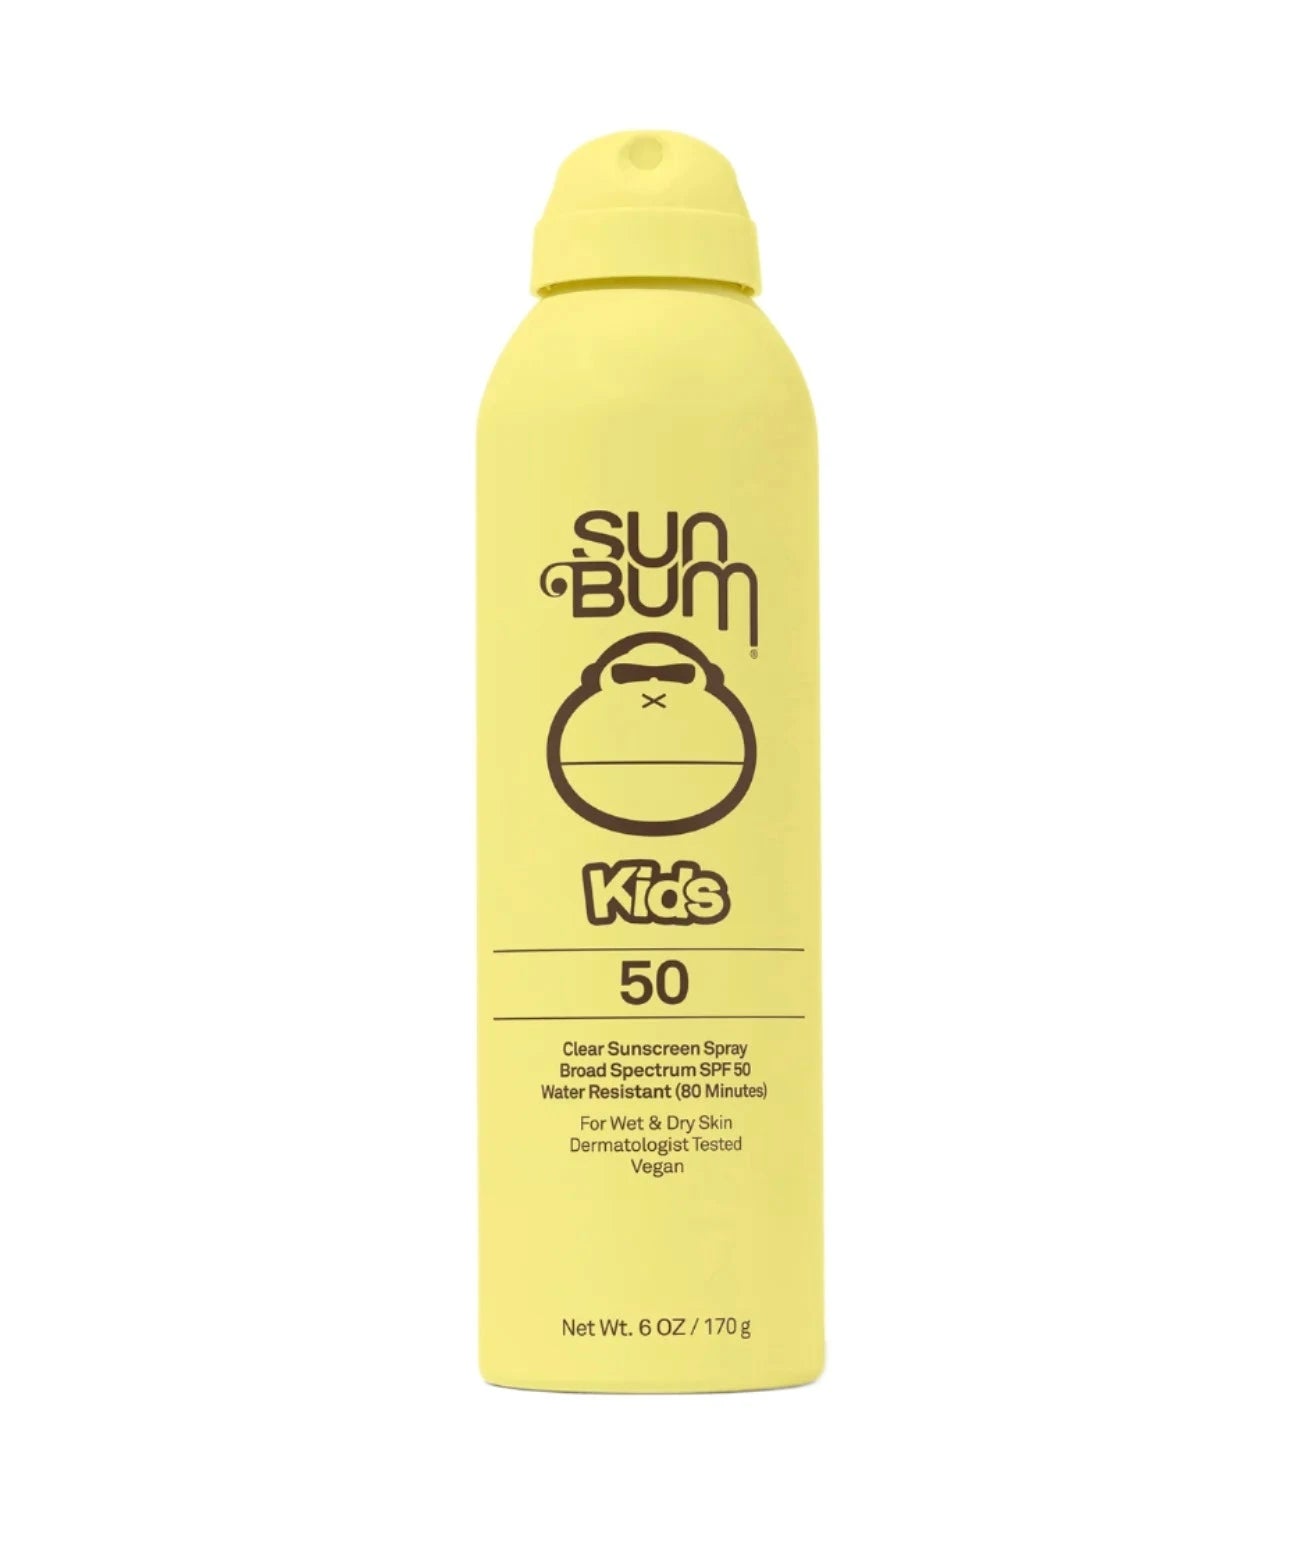 SUN BUM Kids SPF 50 Clear Sunscreen Spray Sunscreen Sun Bum 